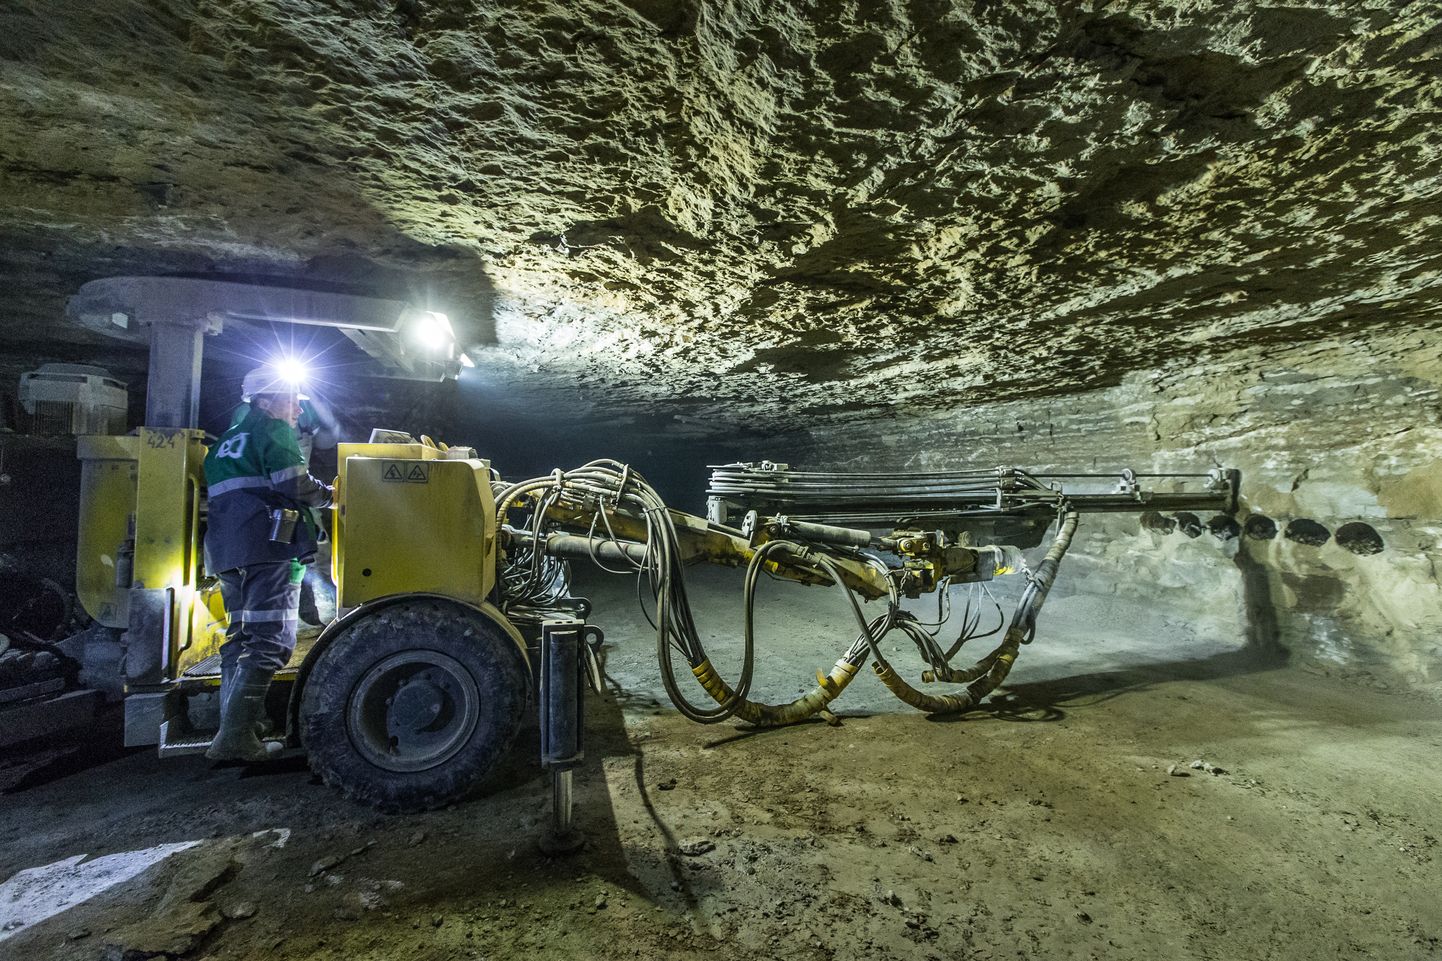 Enam kui 50 meetri sügavusel asuvates Estonia kaevanduse käikudes valitseb kogu aprillikuu jooksul vaikus.